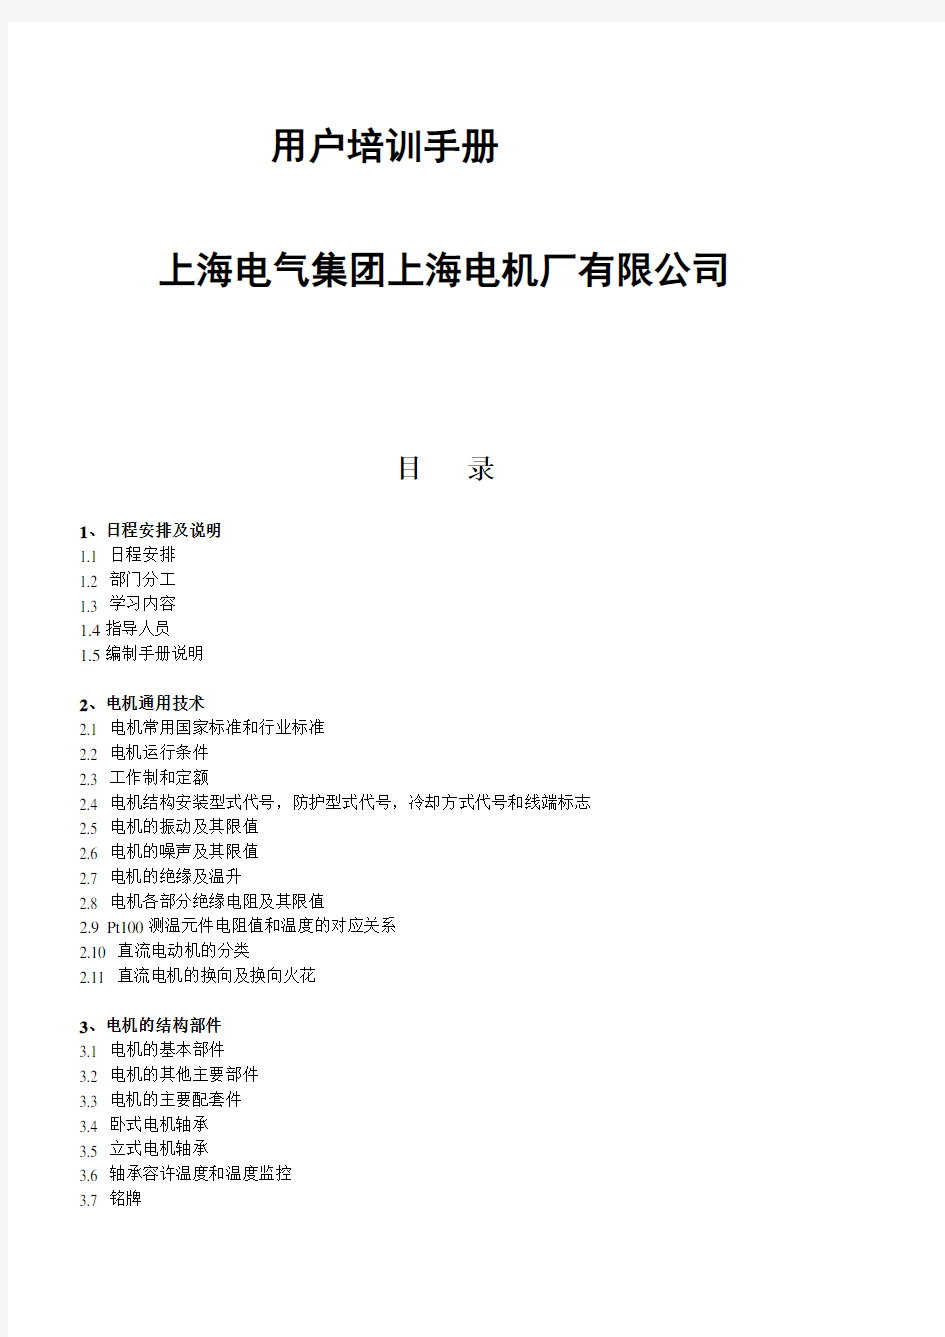 上海电气集团上海电机厂有限公司用户培训手册